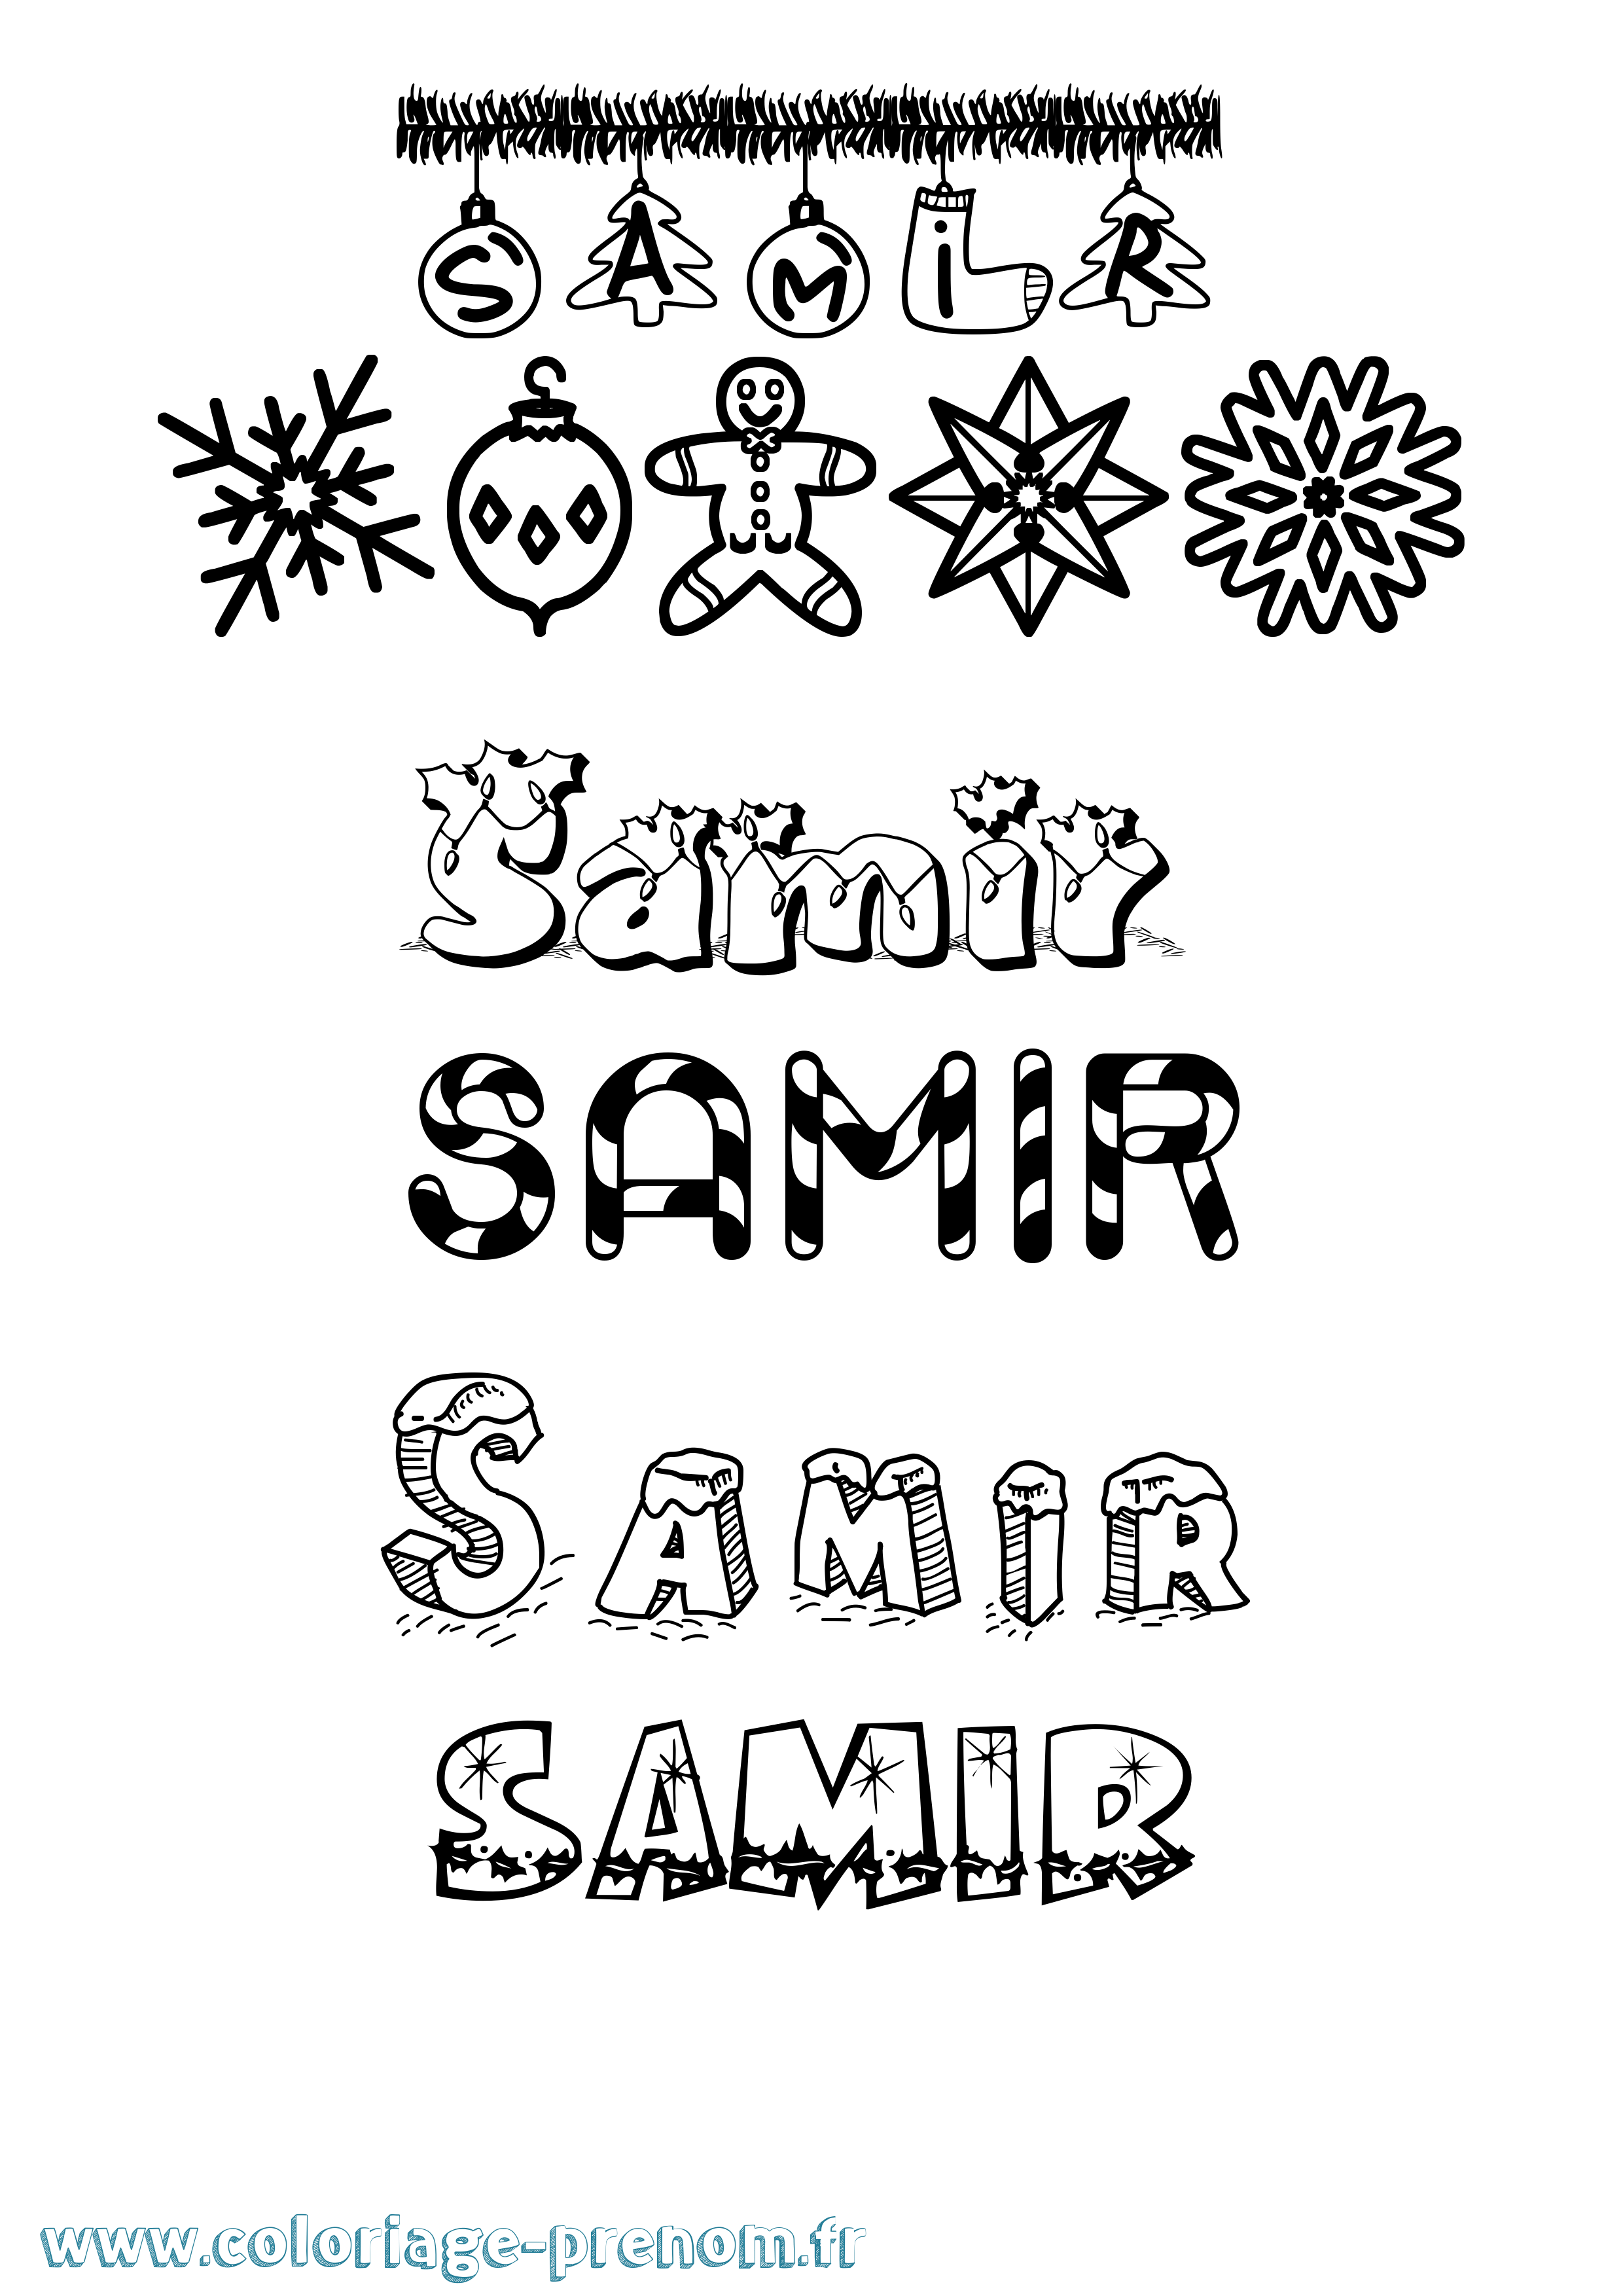 Coloriage prénom Samir